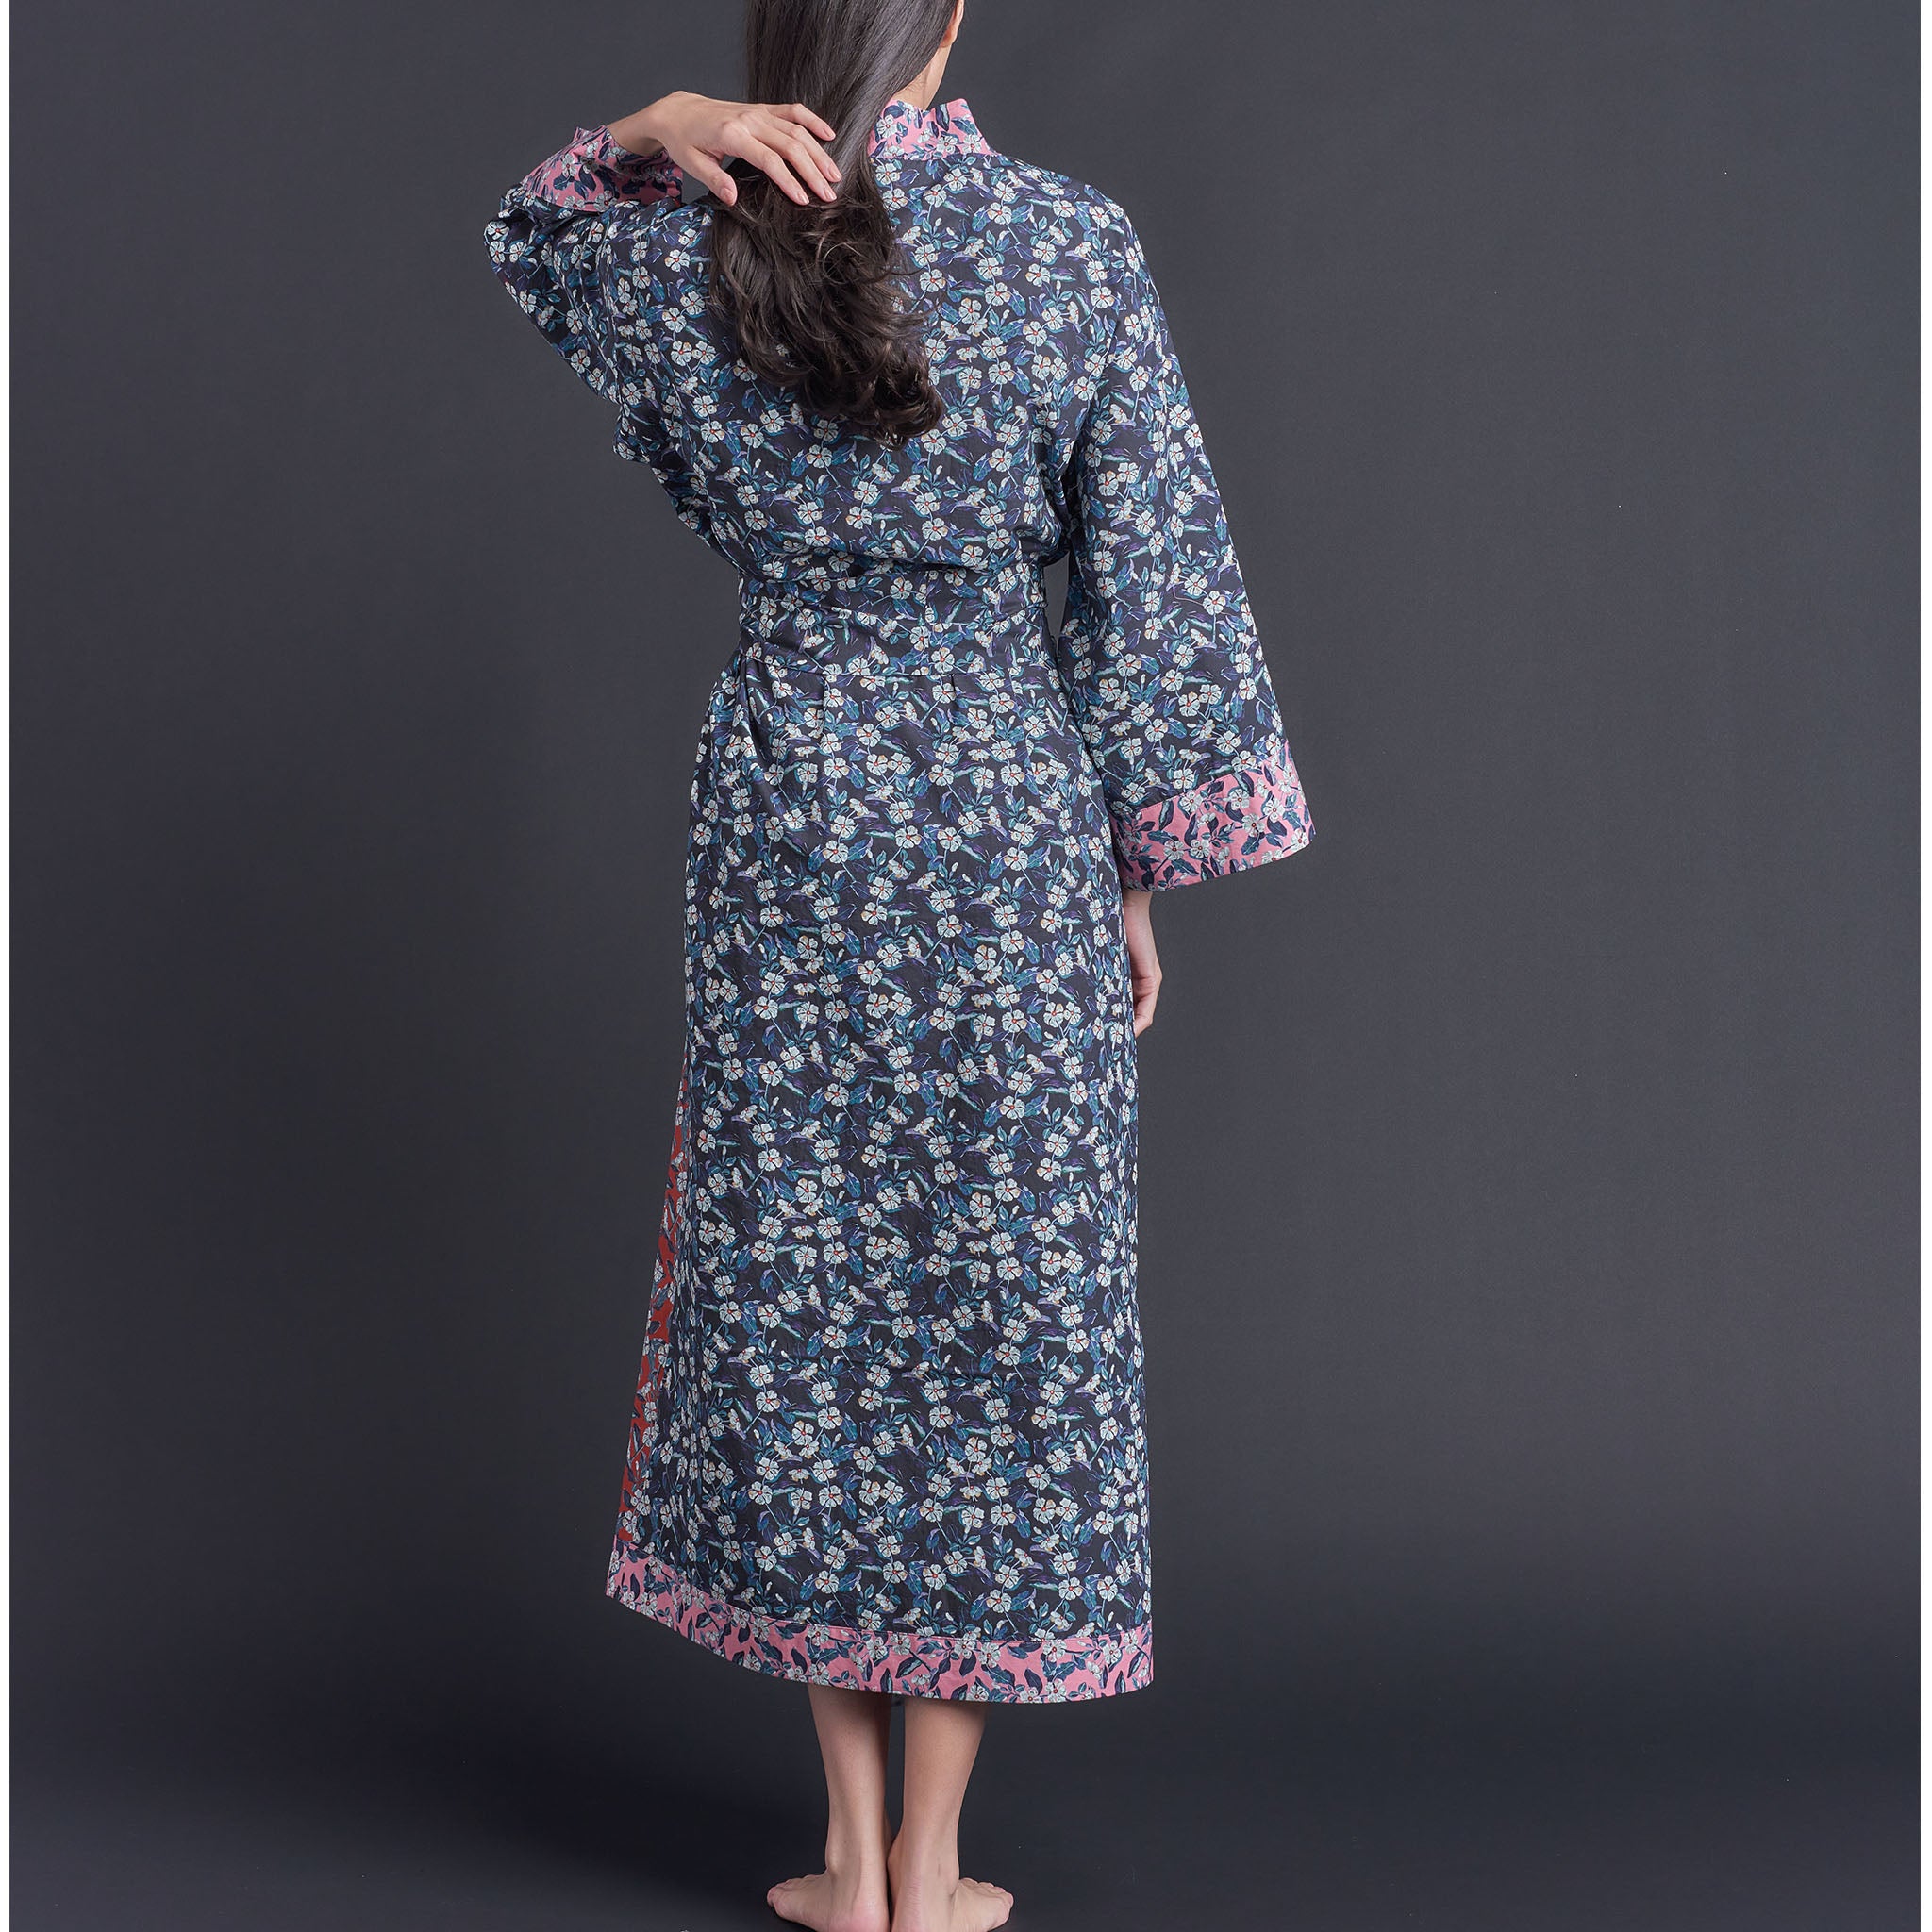 Asteria Kimono Robe in Combination Cedric Liberty of London Print Cotton Poplin